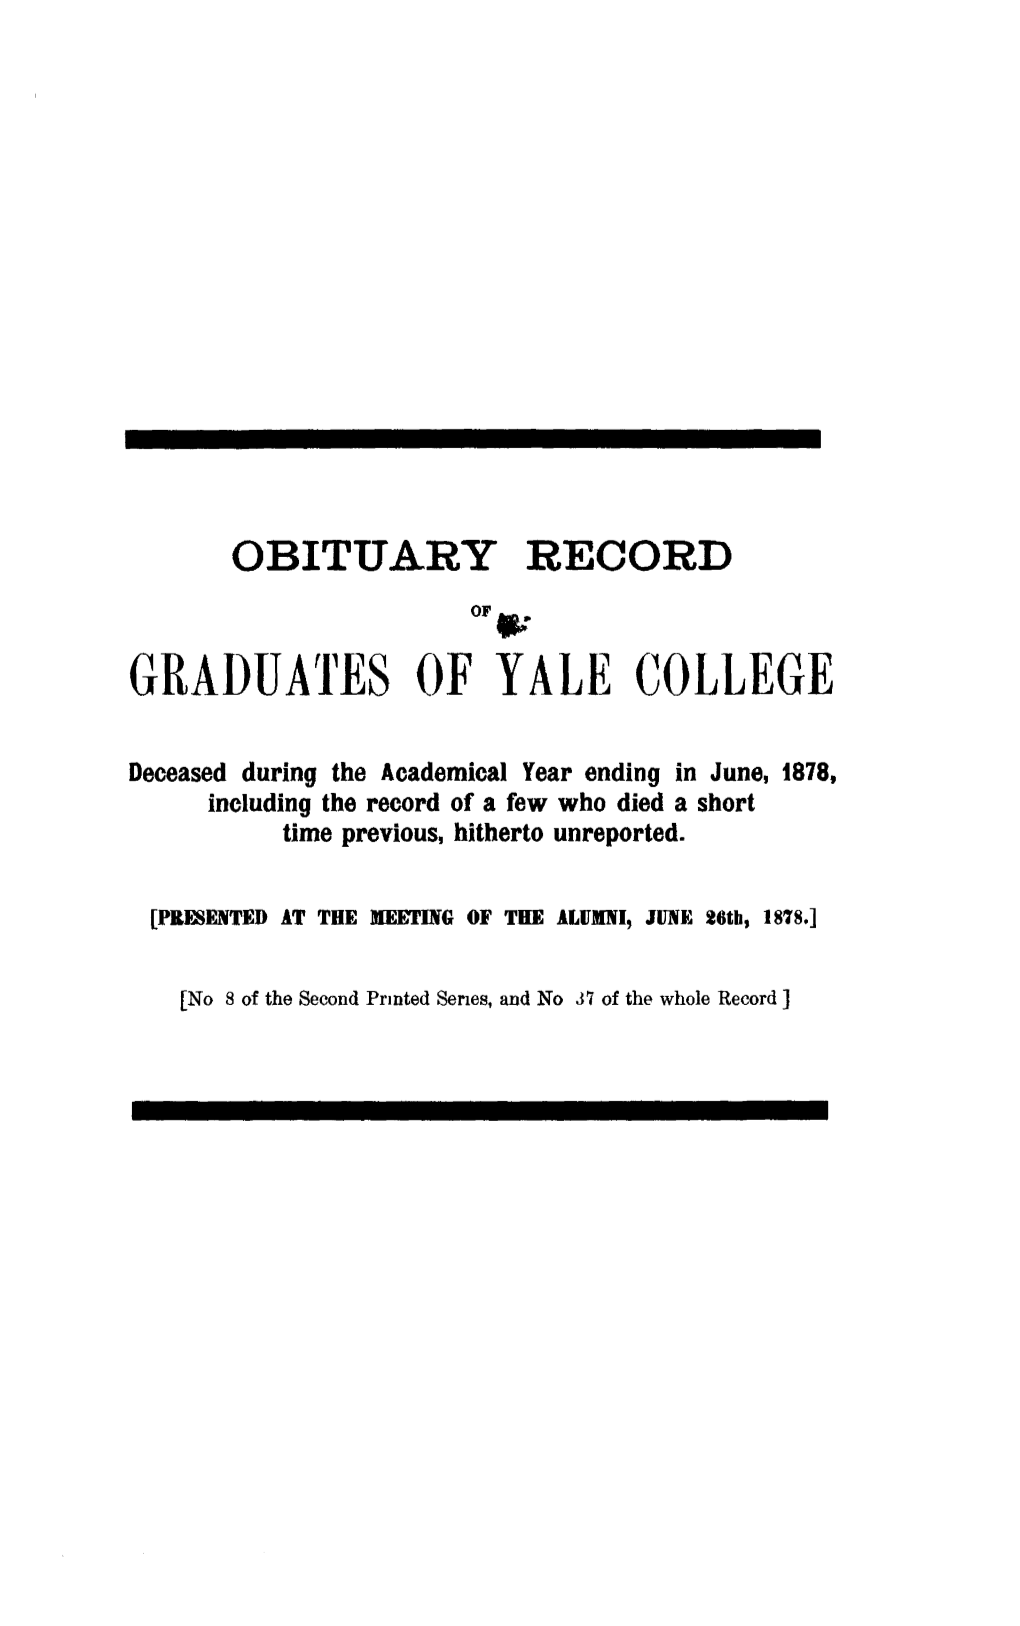 1877-1878 Obituary Record of Graduates of Yale University